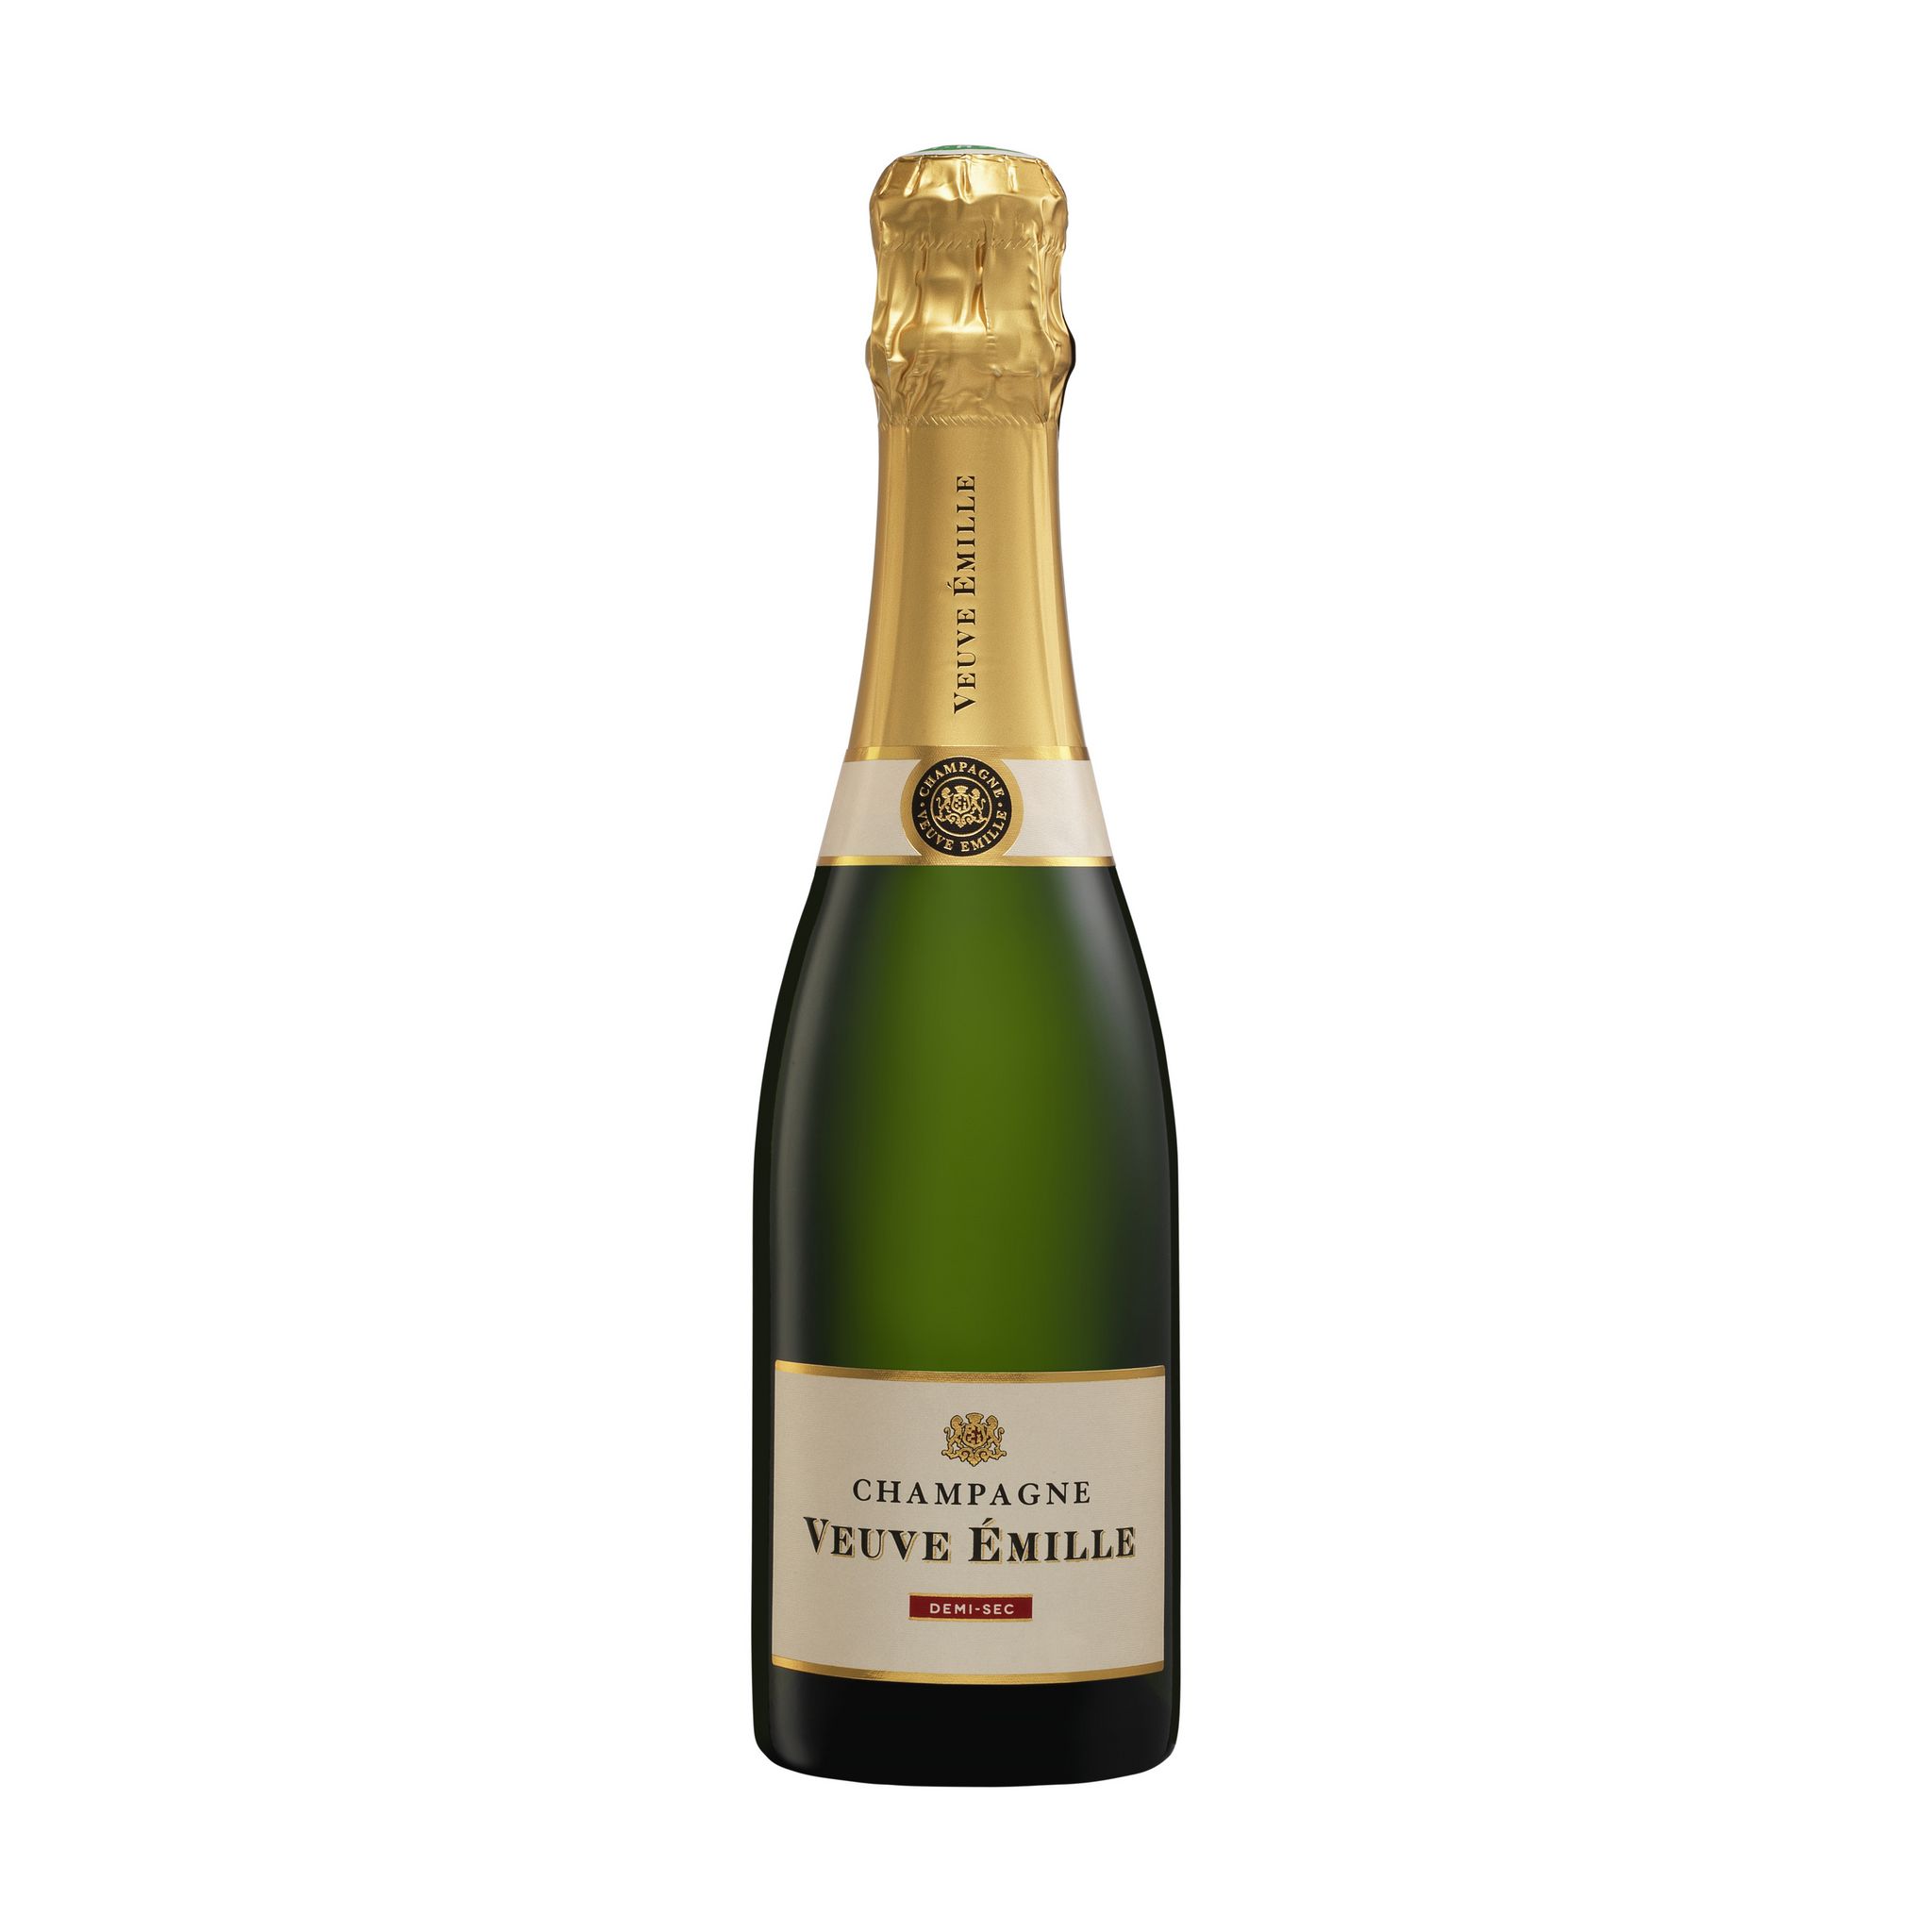 VEUVE EMILLE AOP Champagne demi-sec demi-bouteille Petit format 37